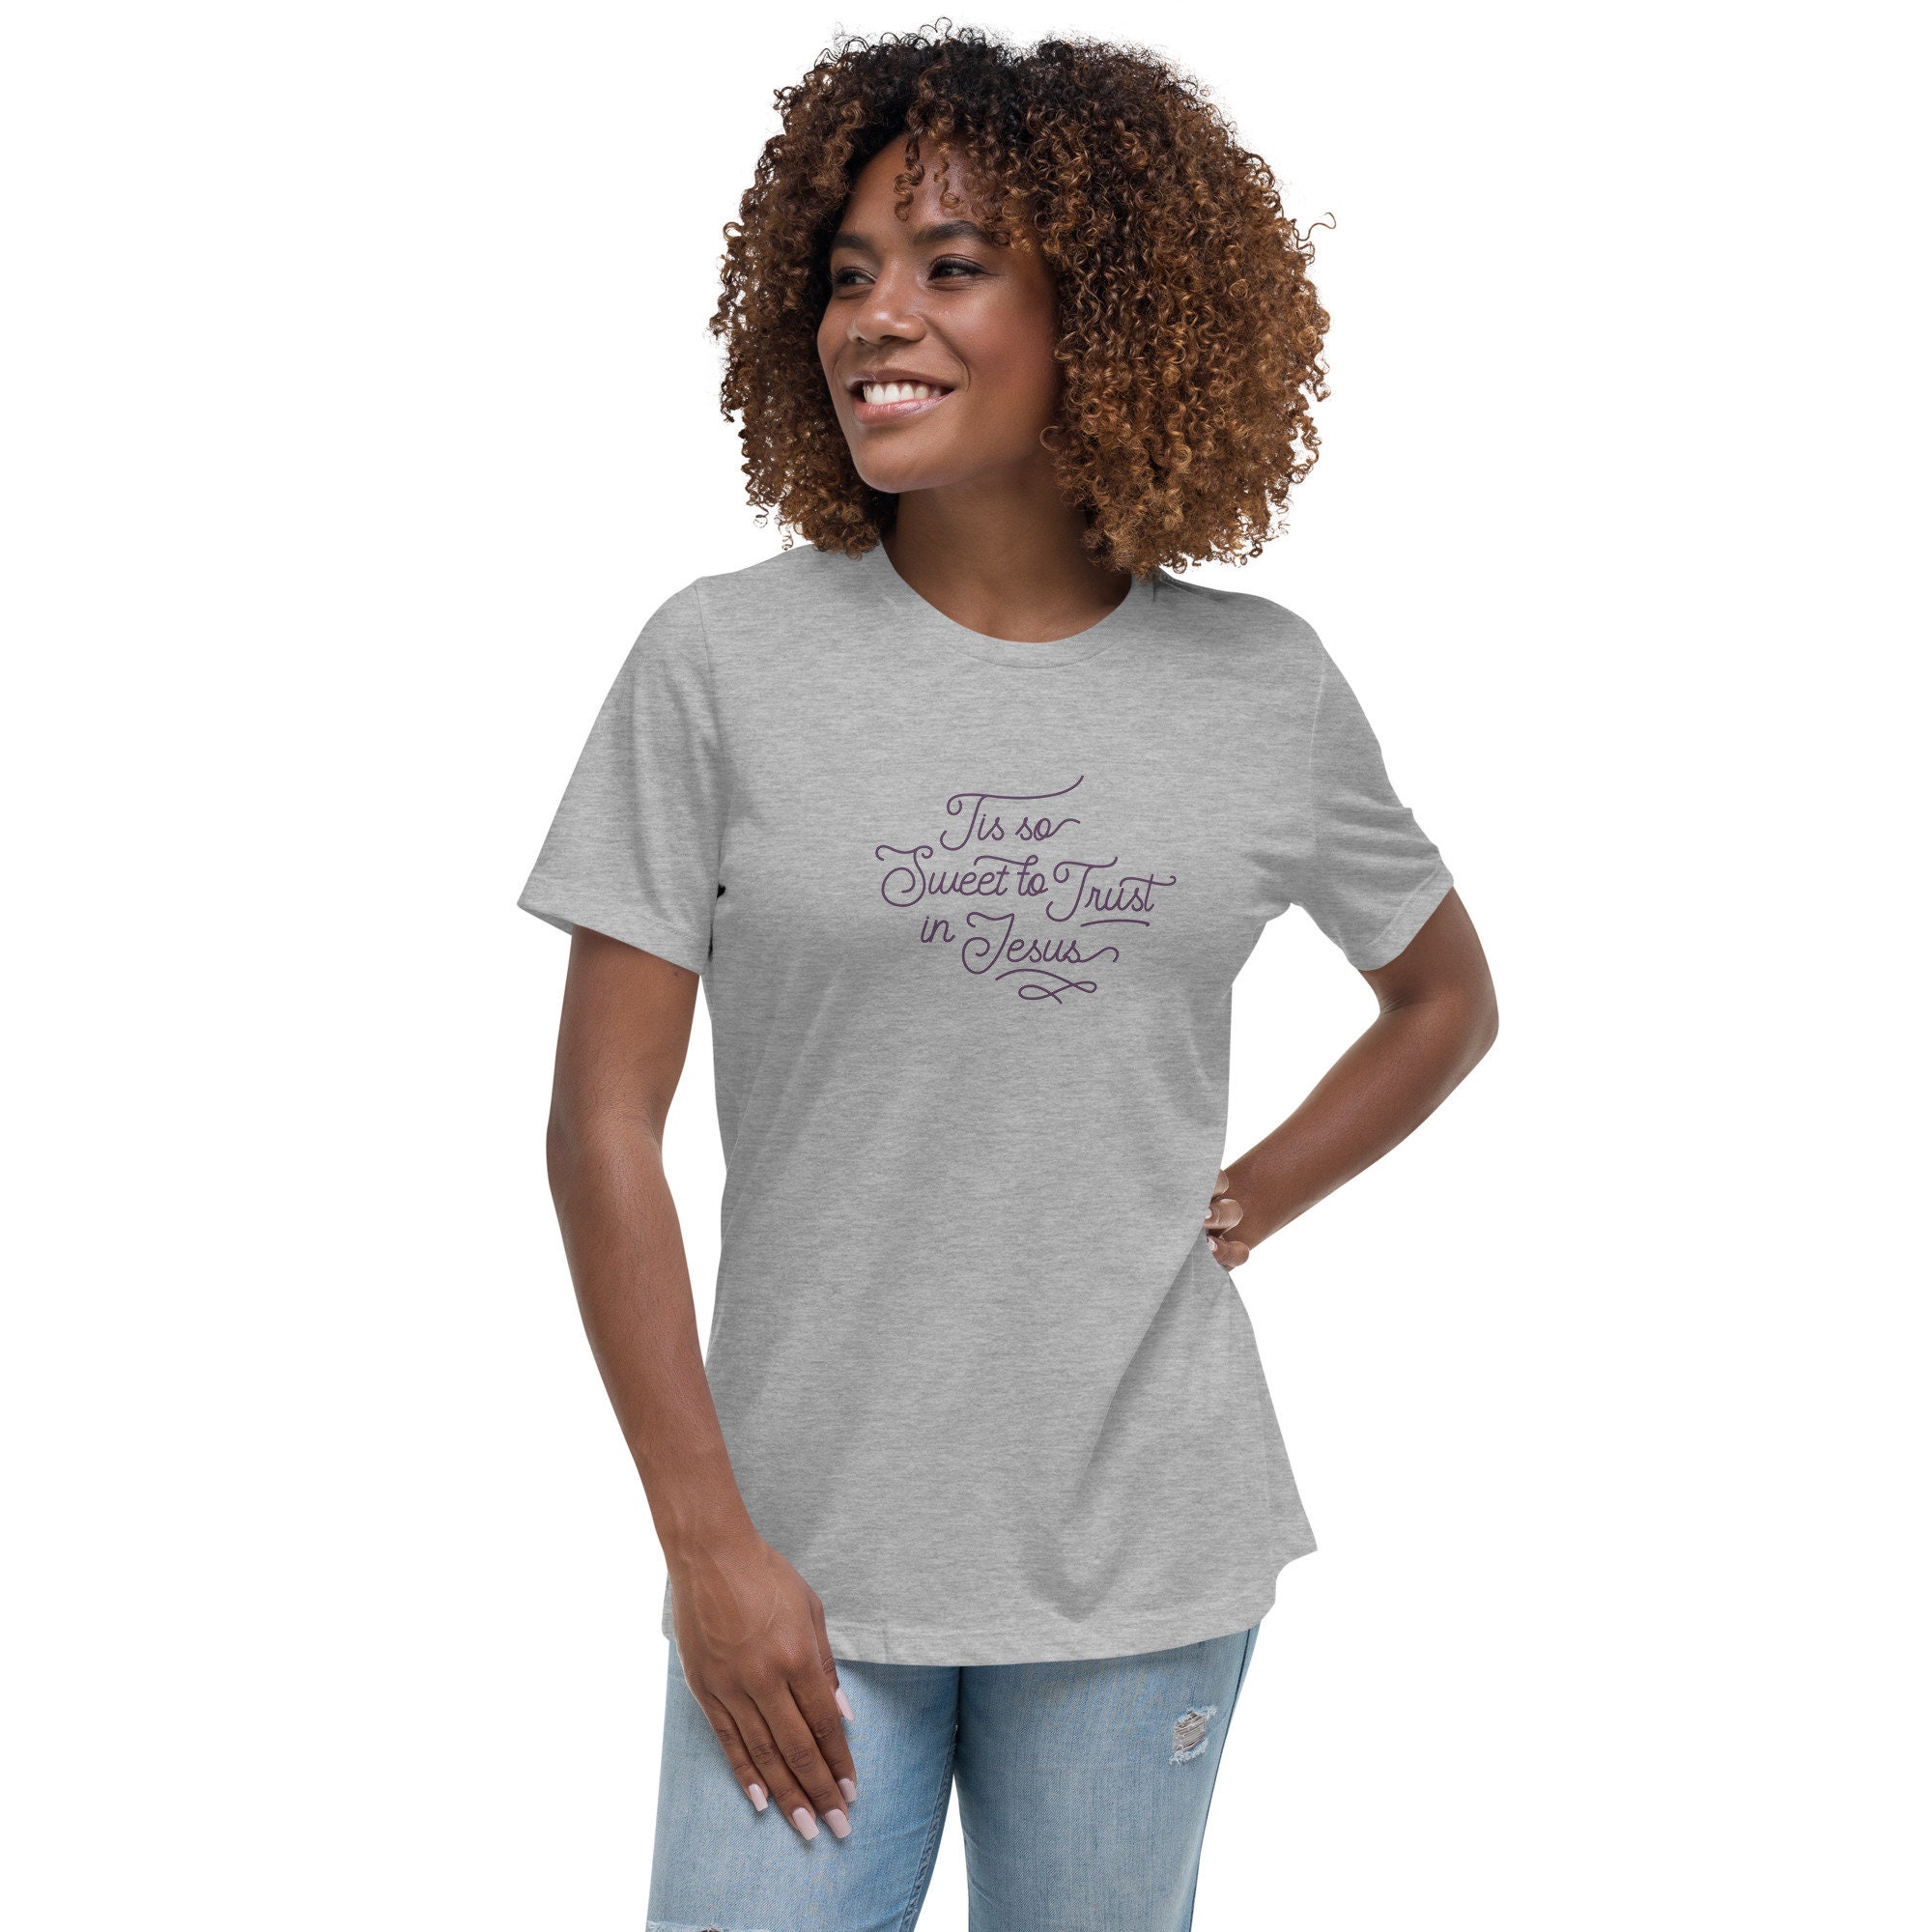 Australien Skuffelse skab Girls Night Out' Women's T-Shirt Spreadshirt, 58% OFF